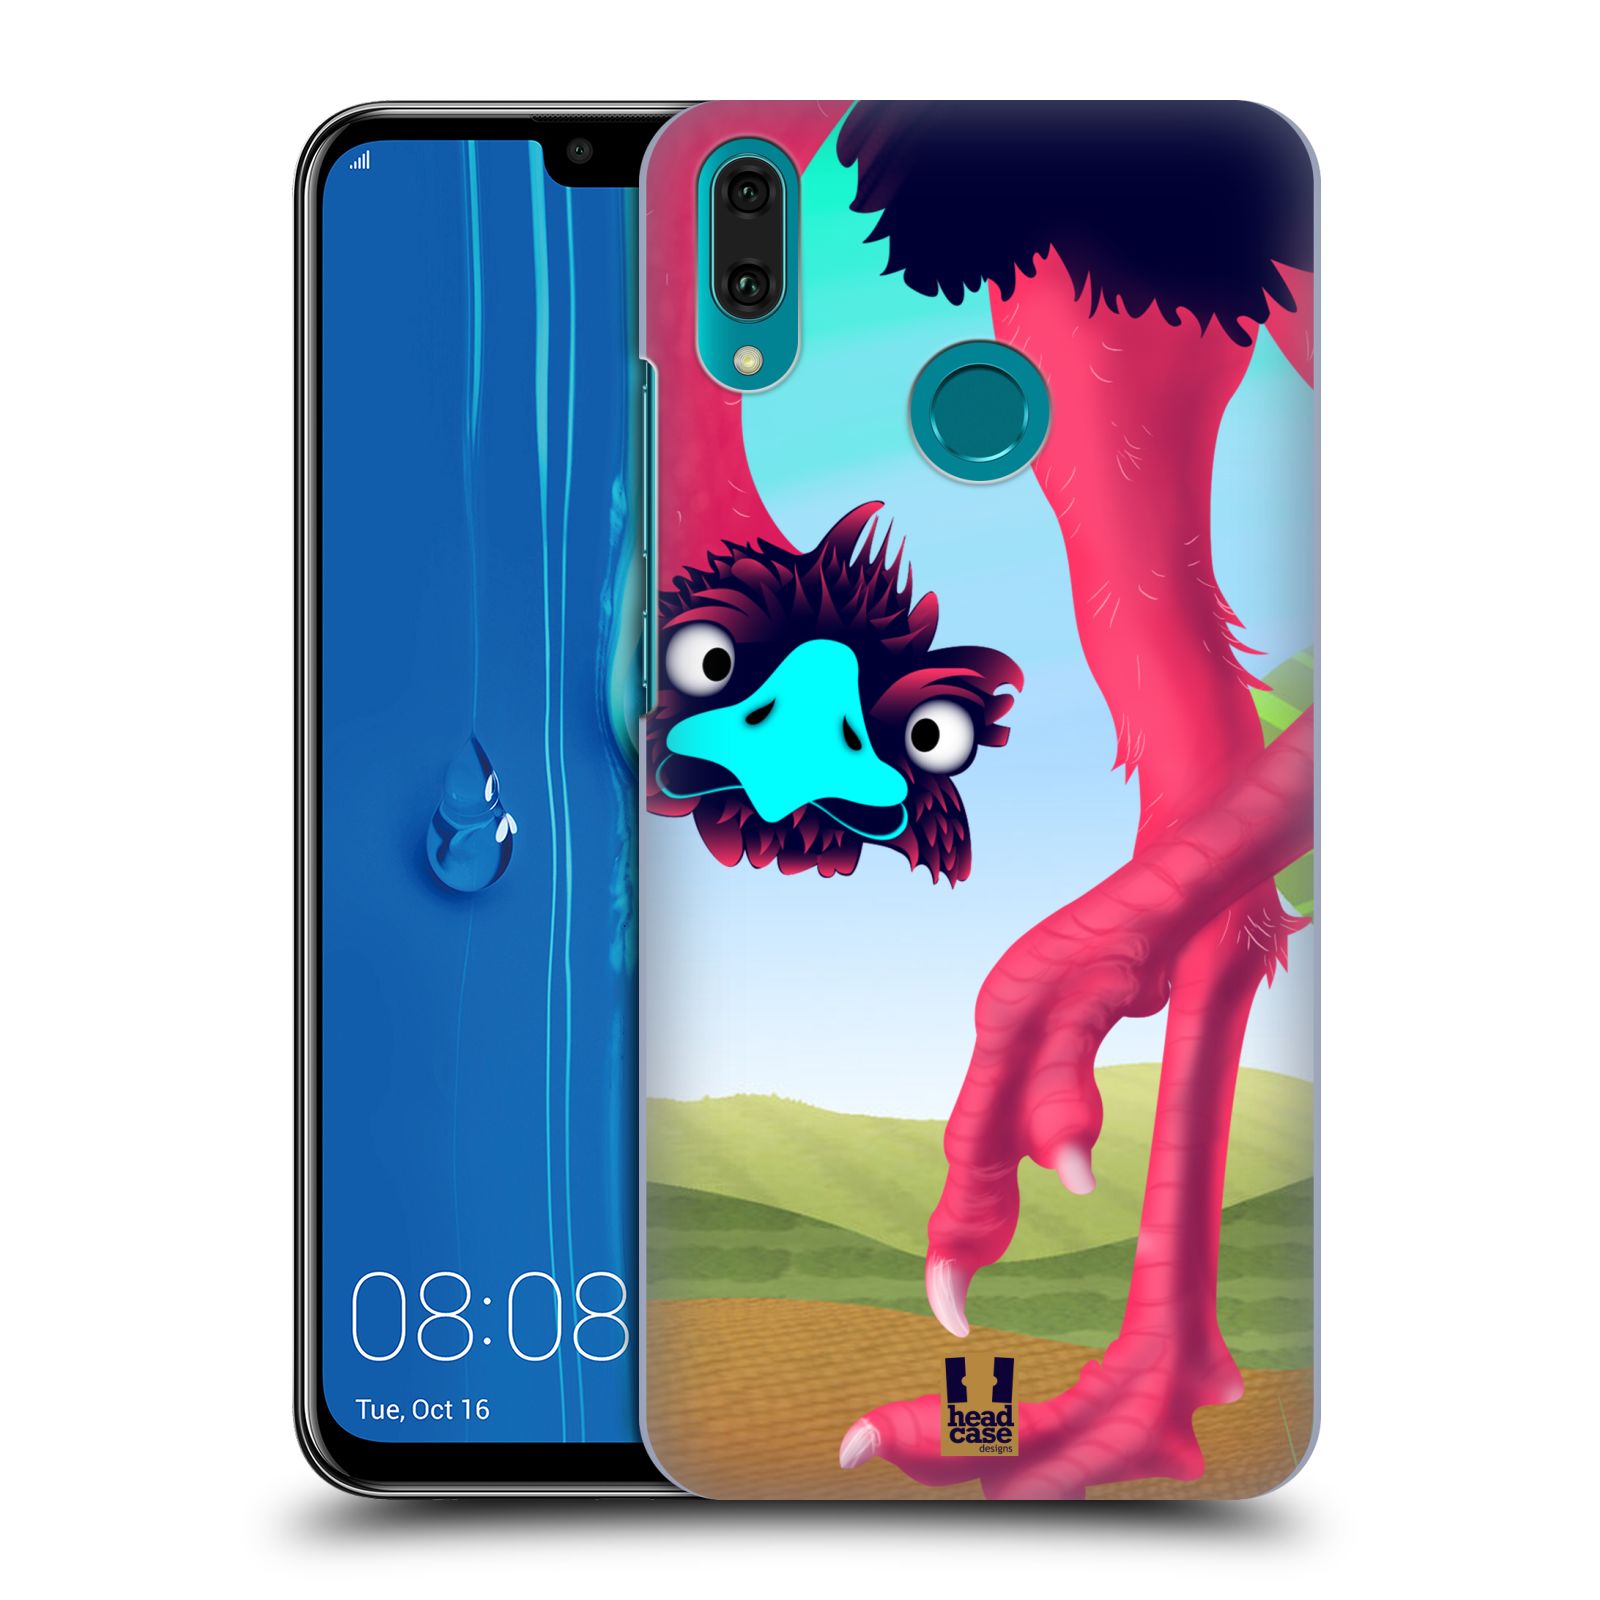 Pouzdro na mobil Huawei Y9 2019 - HEAD CASE - vzor dlouhé nohy kreslená zvířátka pštros